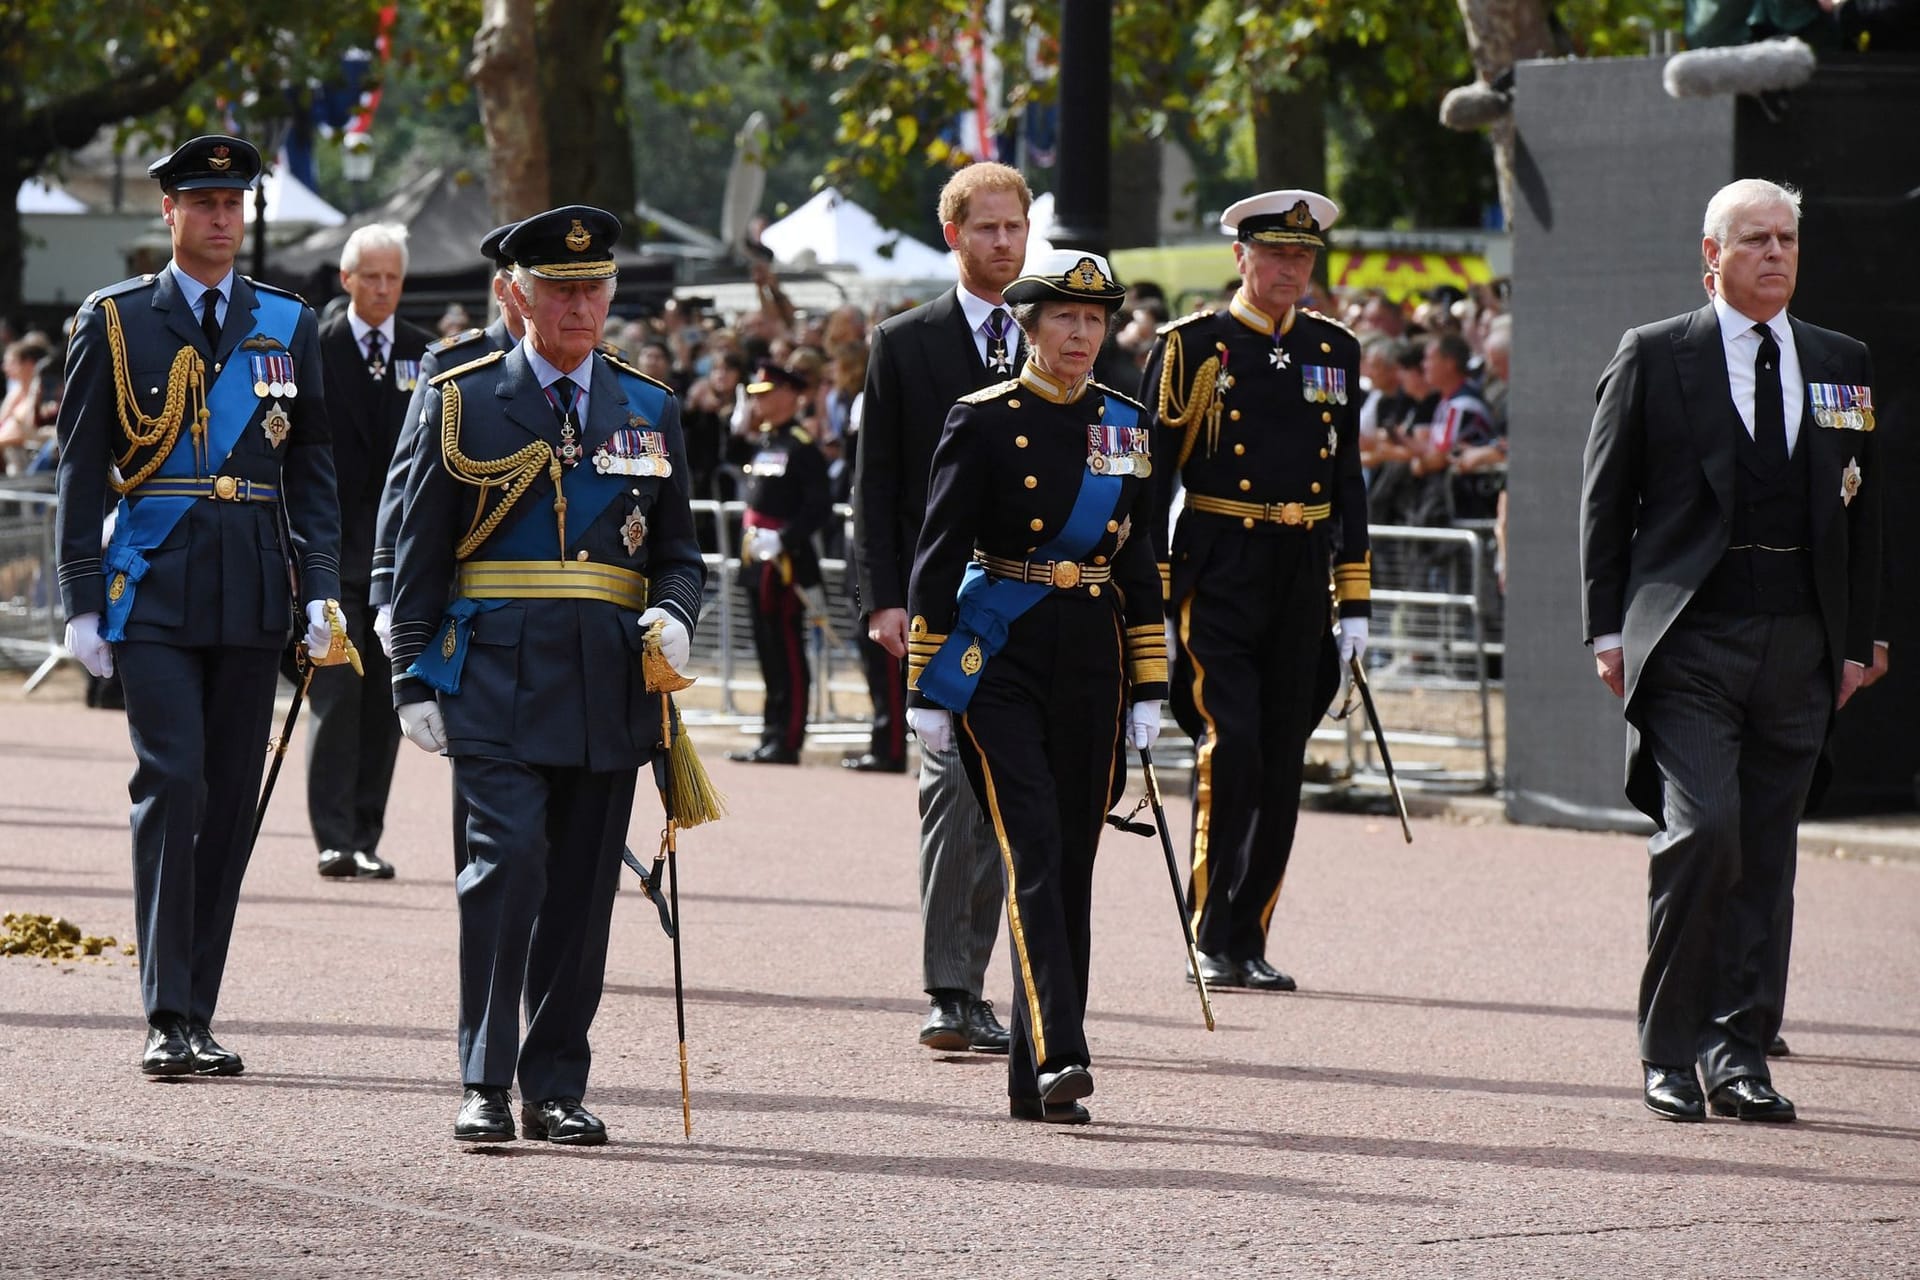 Andrew und Harry im Anzug, der Rest der Royal Family in militärischer Kluft.